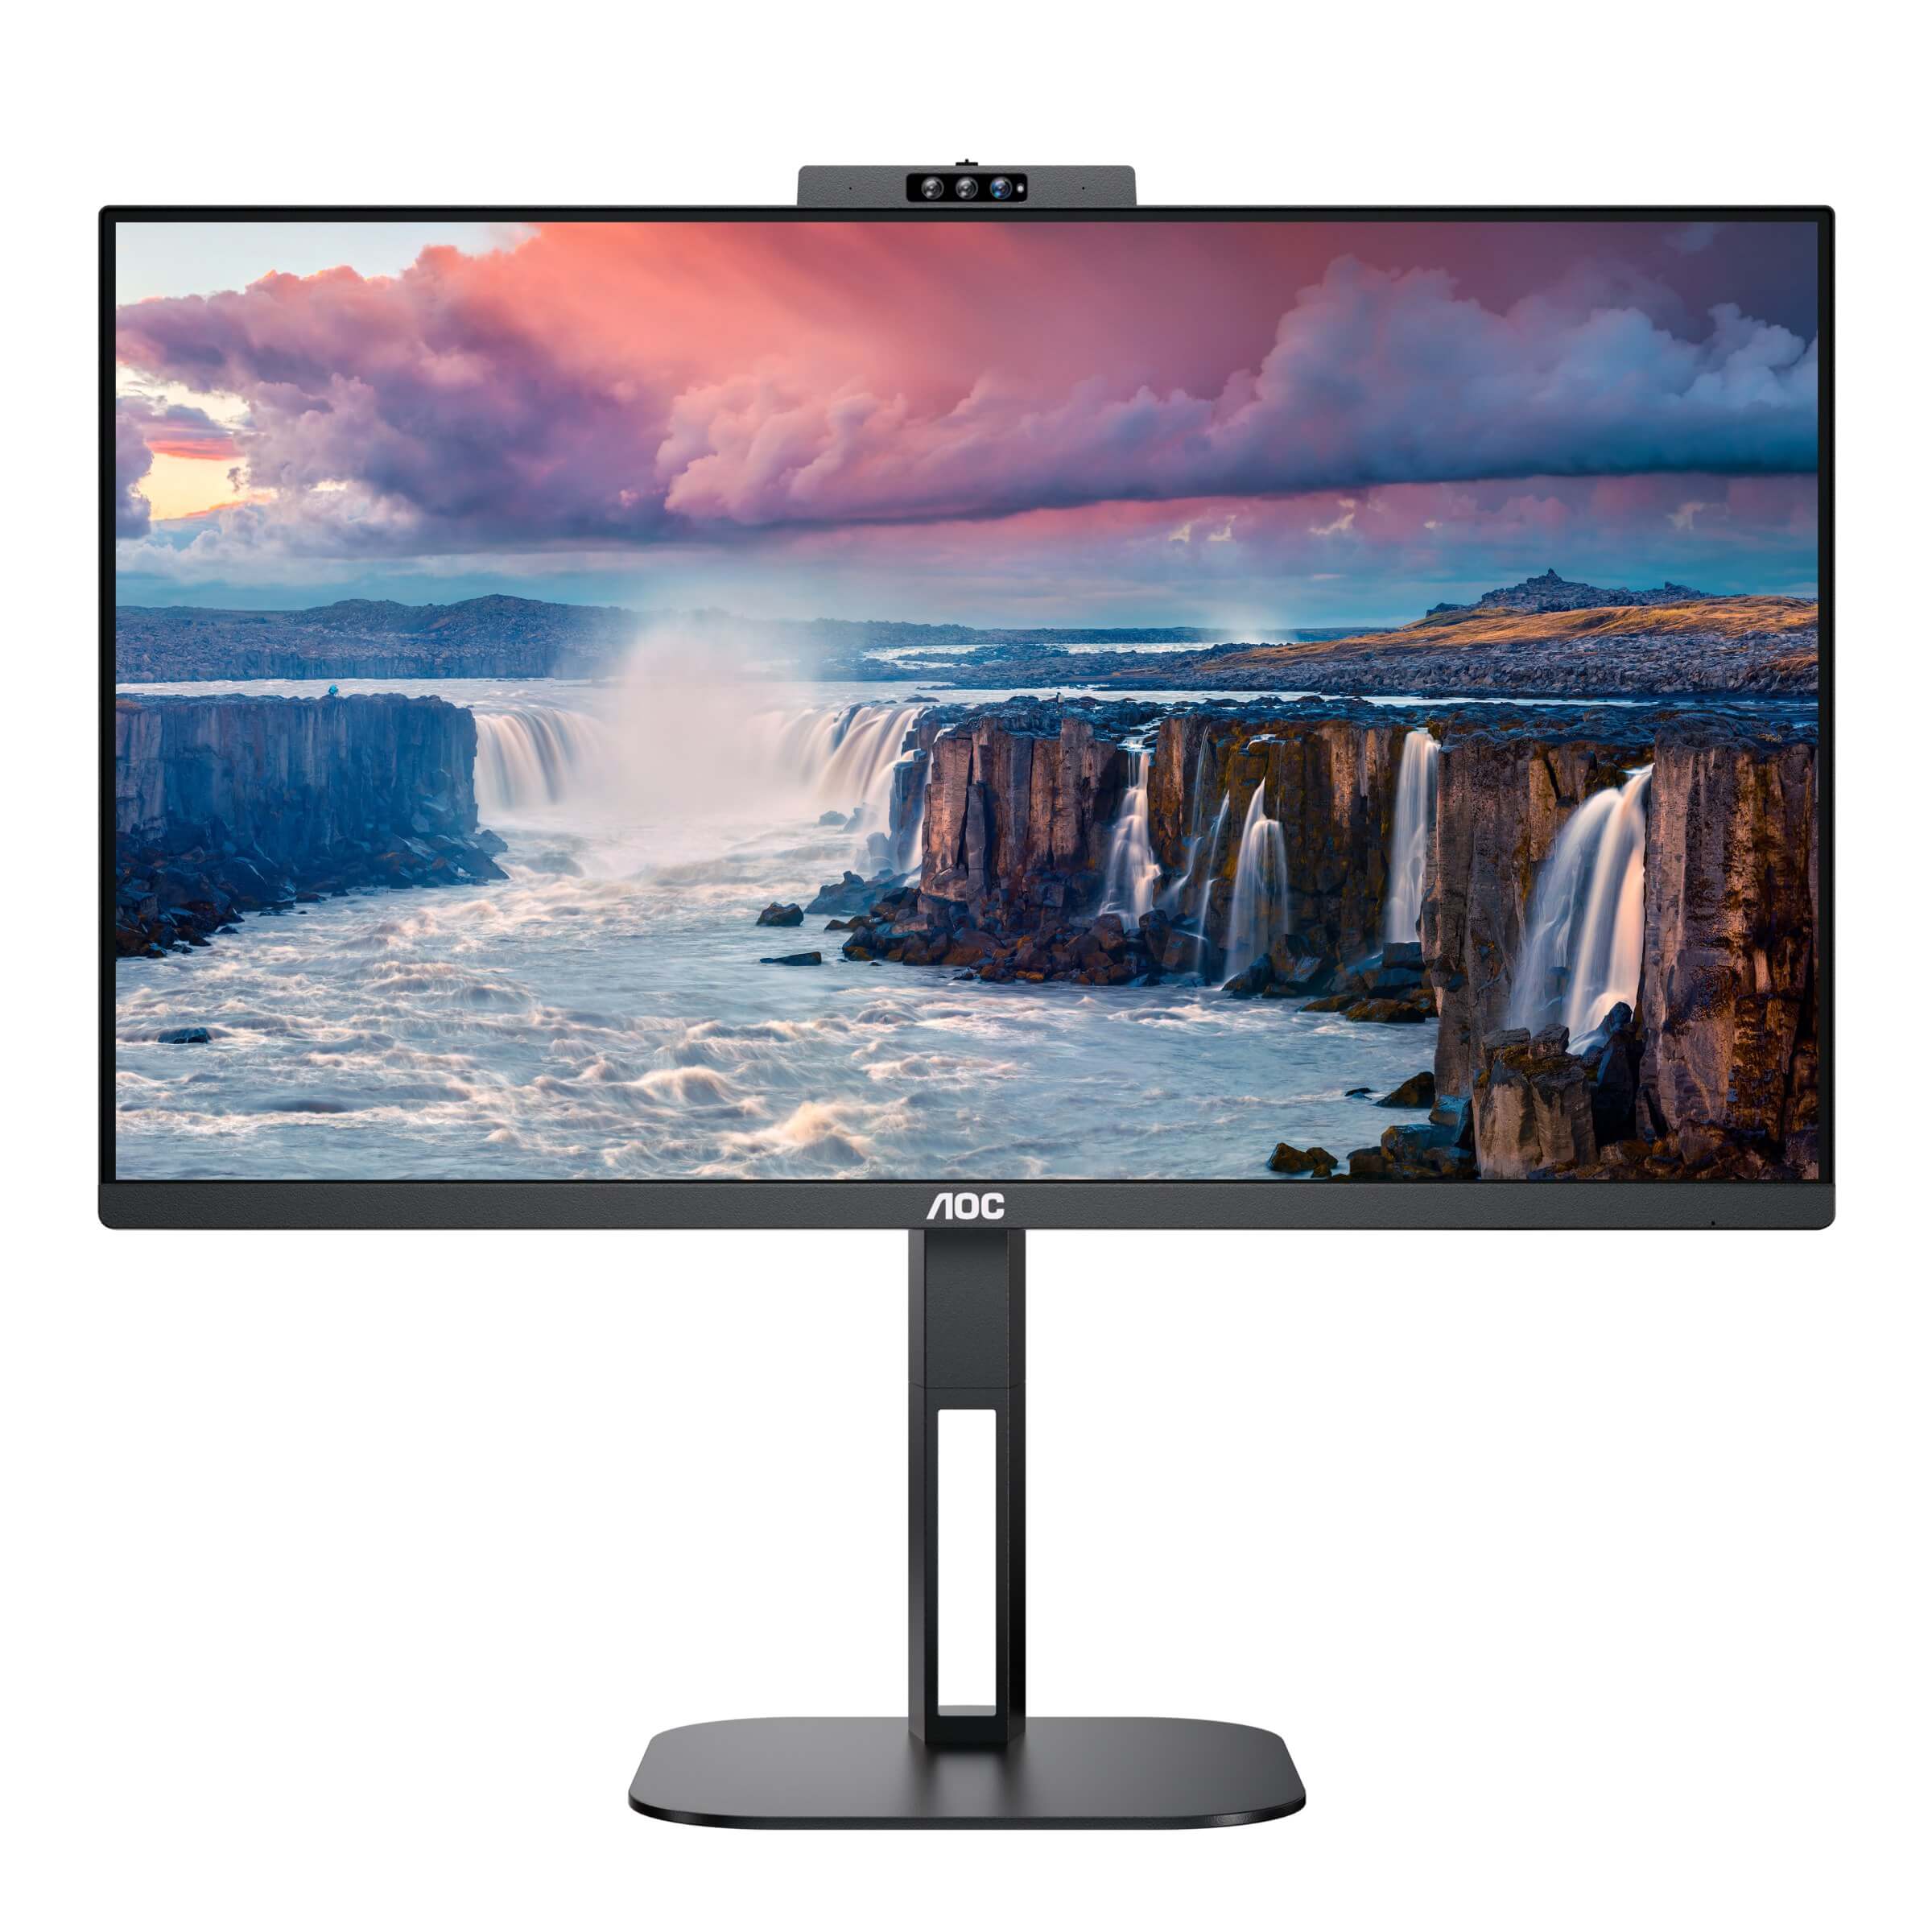 AOC añade tres nuevos monitores a su serie V5 con webcam integrada y USB C de 65W 4